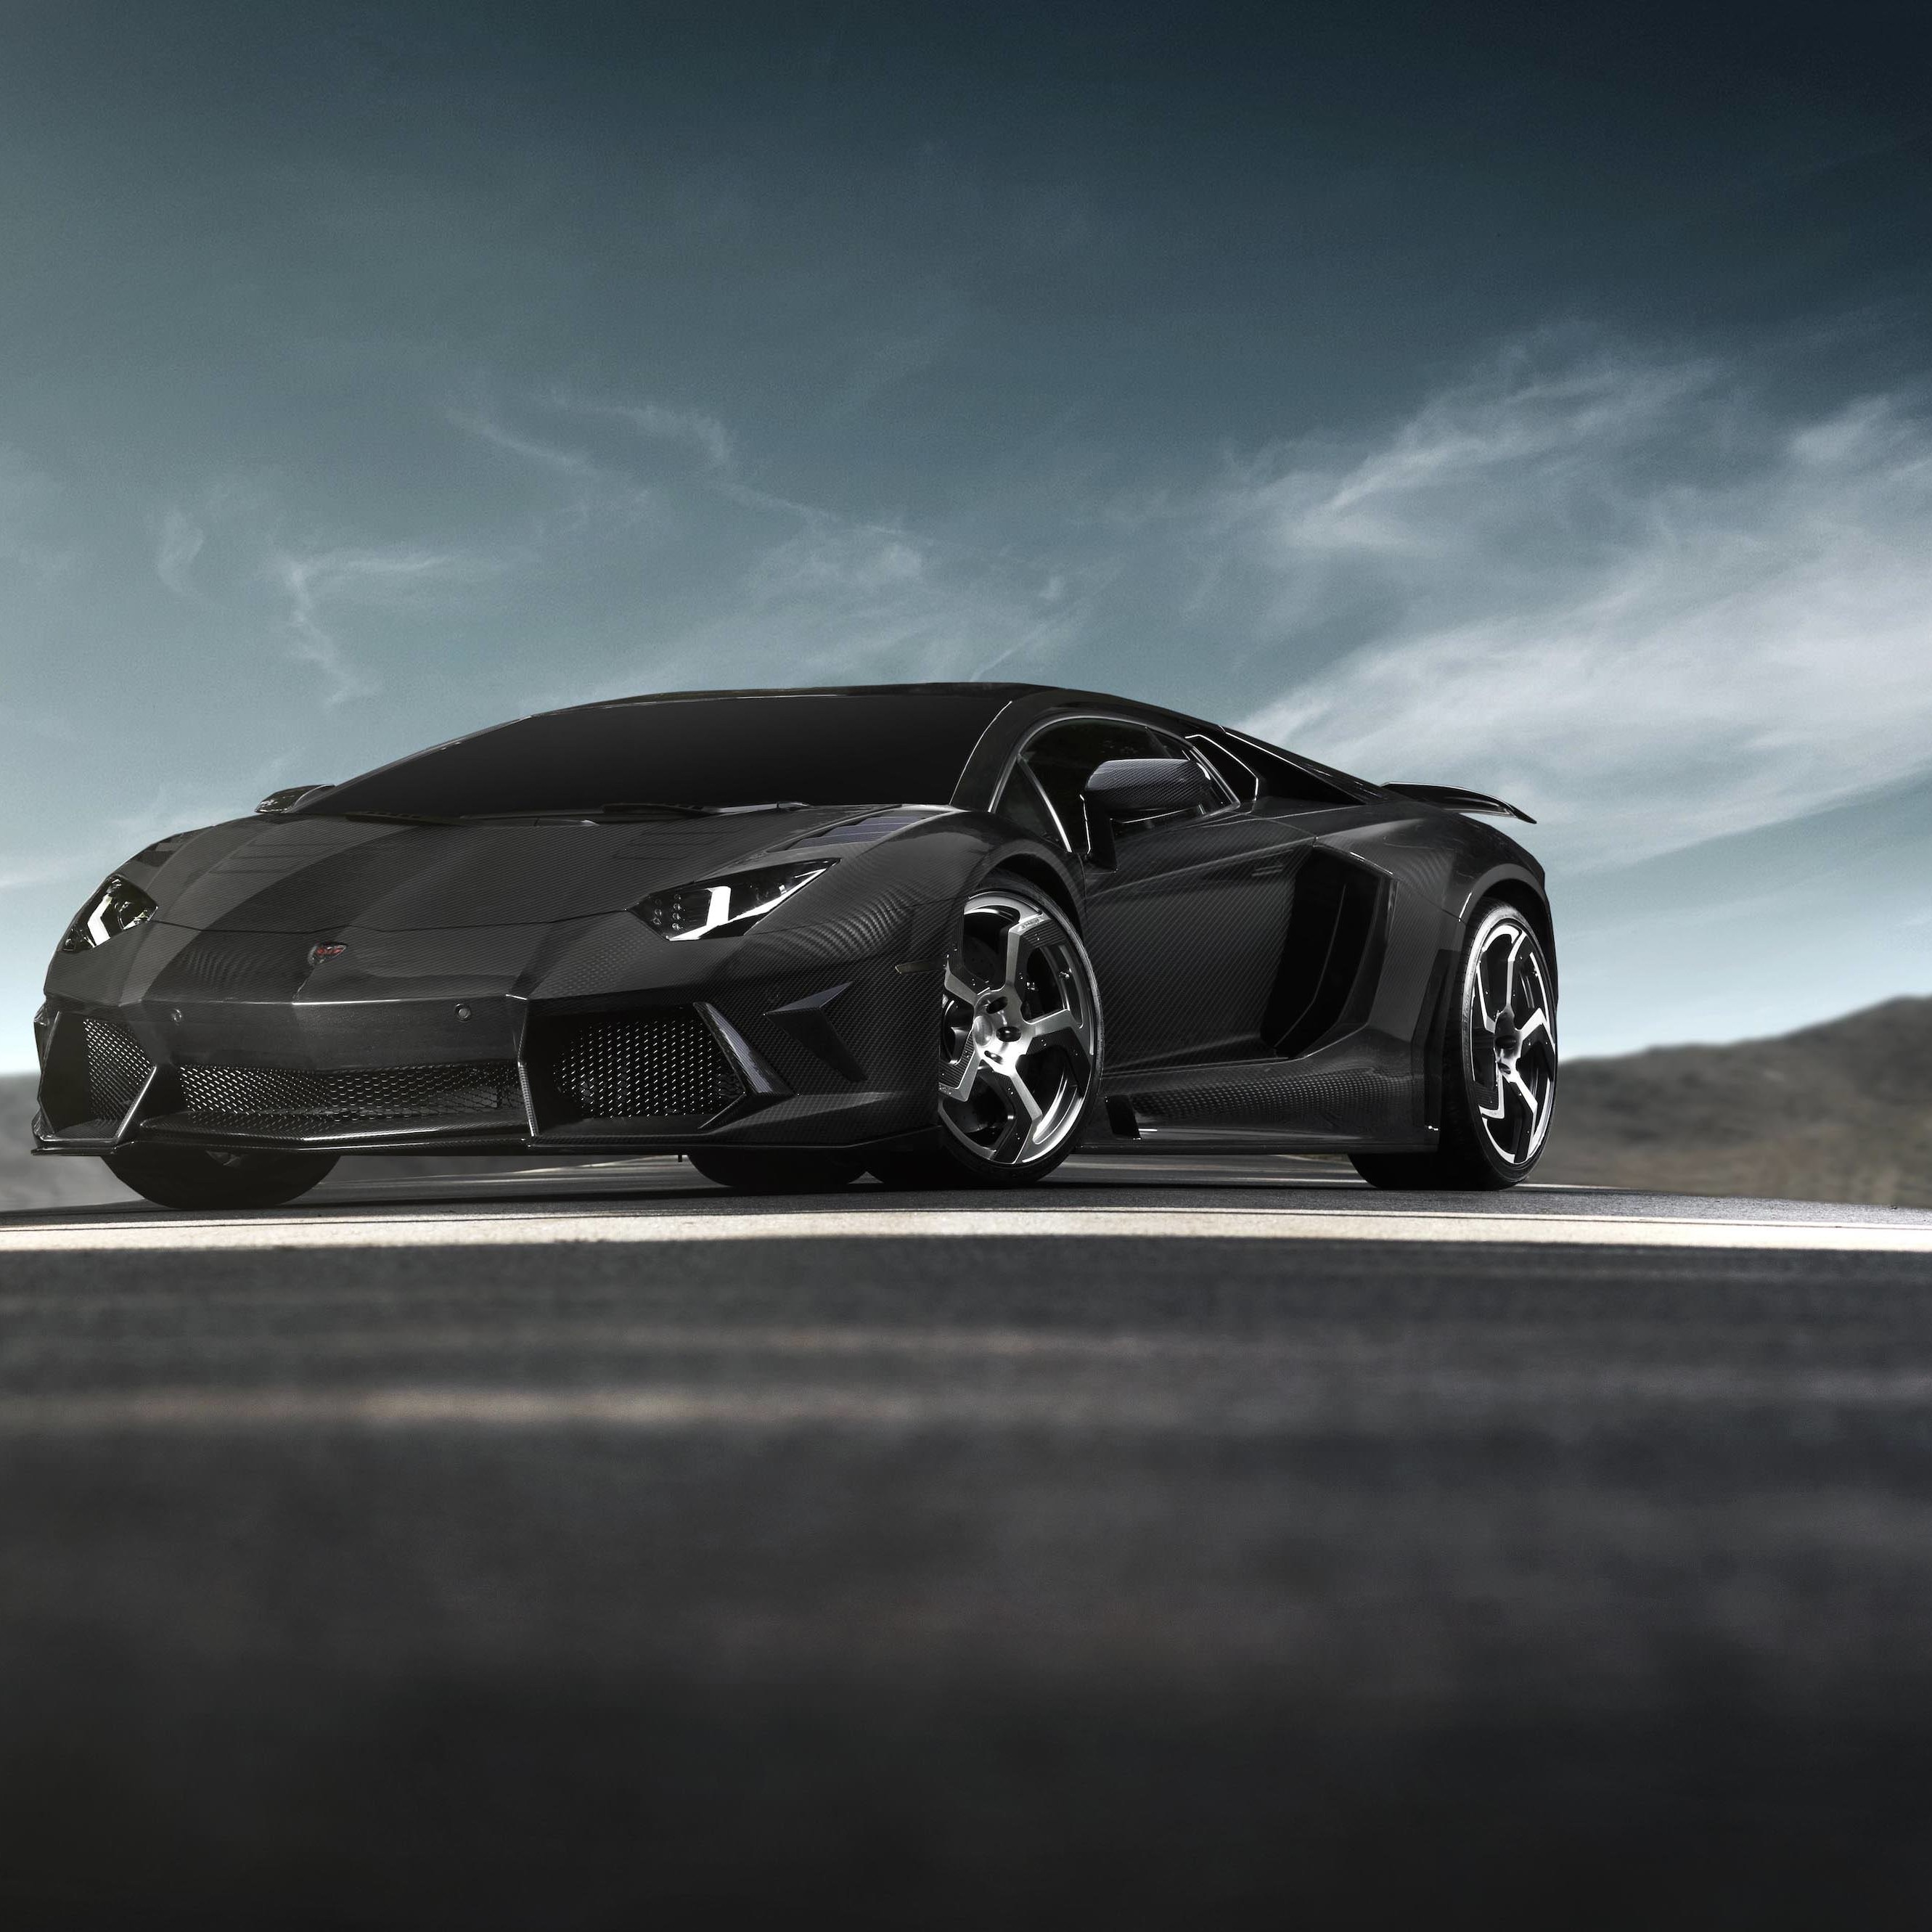 Mansory Carbonado Lamborghini Aventador LP700-4 Wallpaper for Apple iPhone 6 Plus